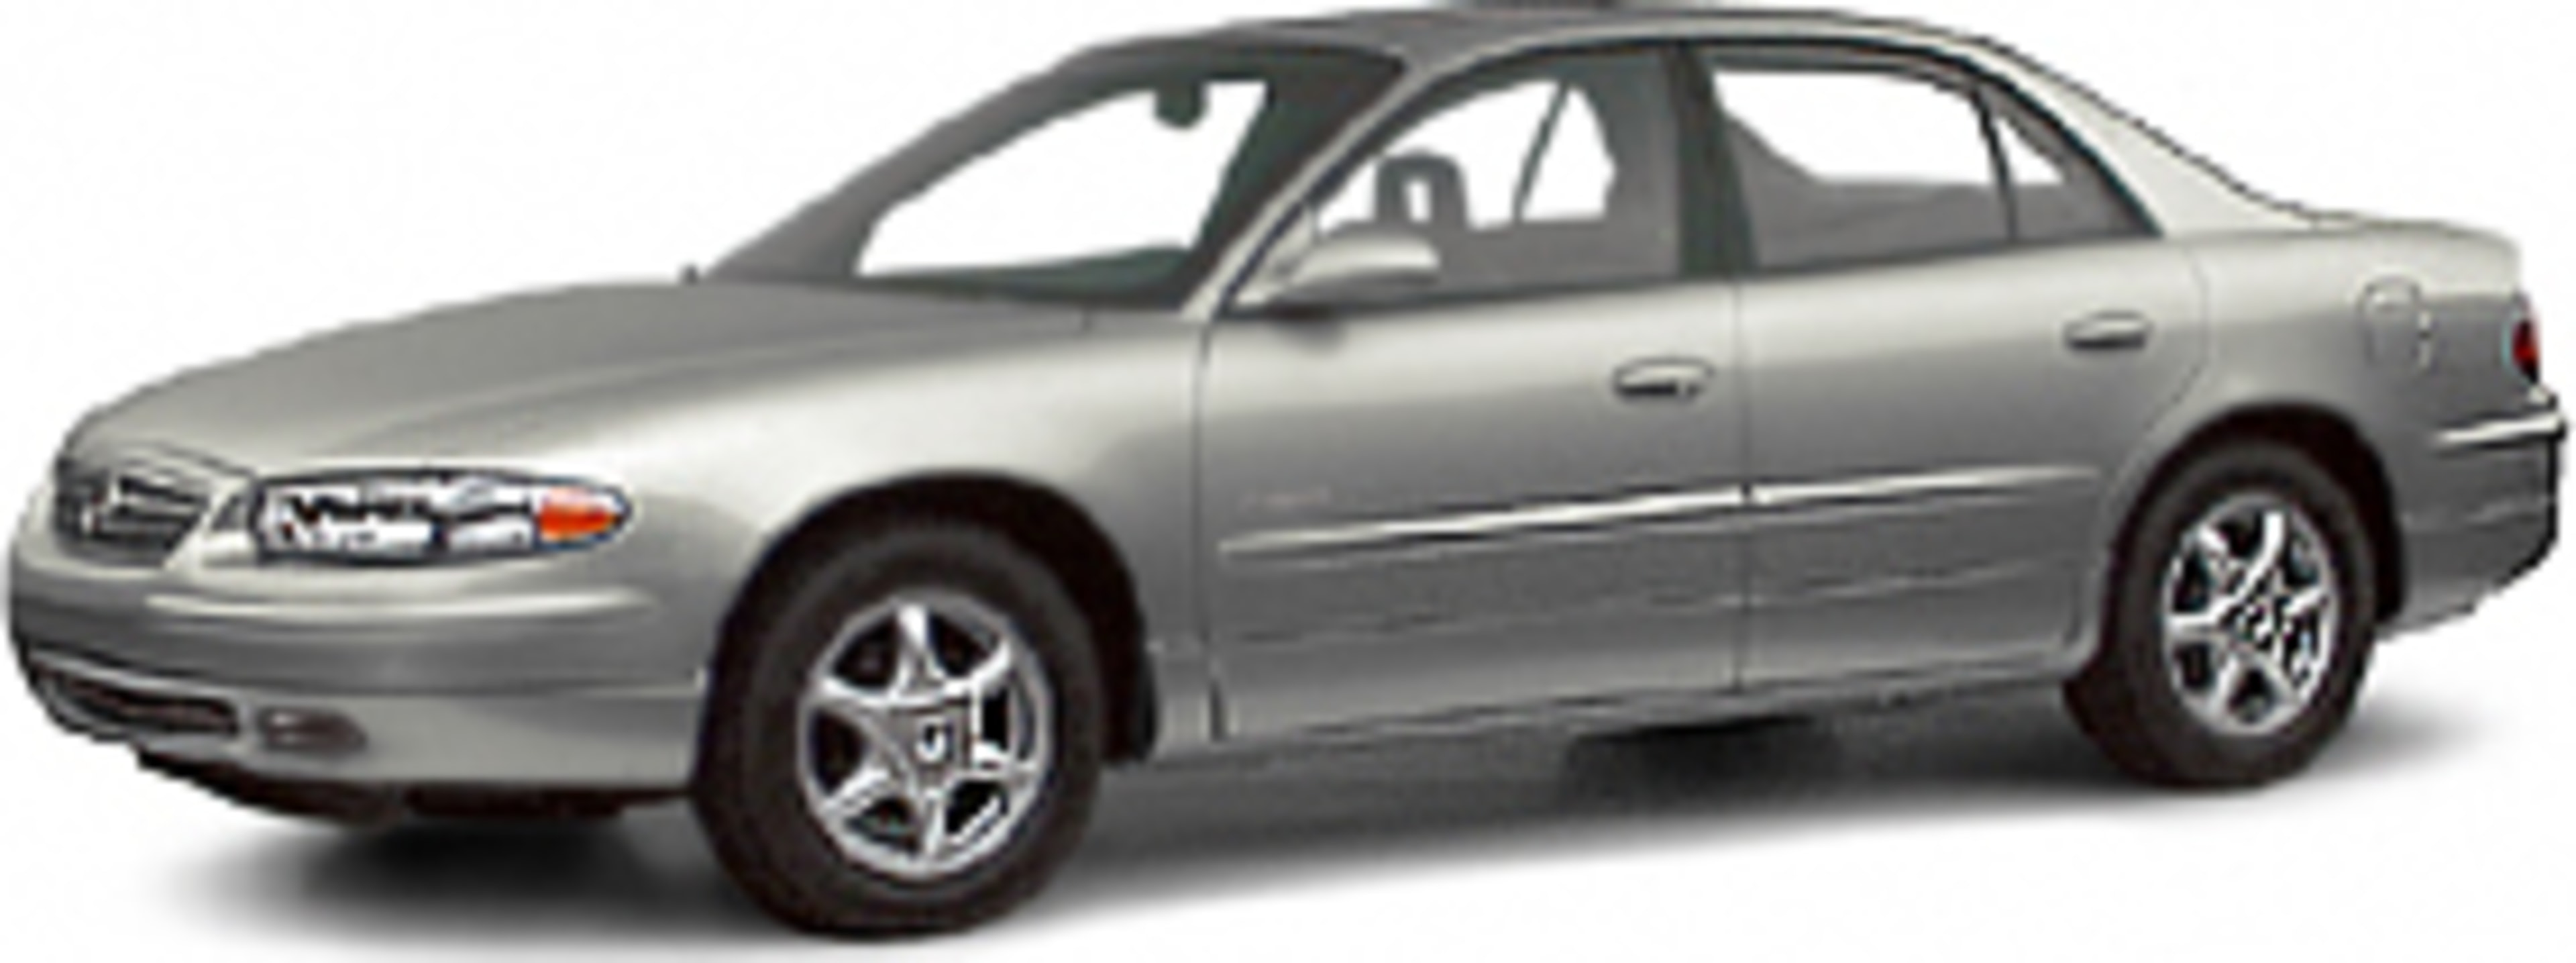 2002 Buick Regal Service and Repair Manual